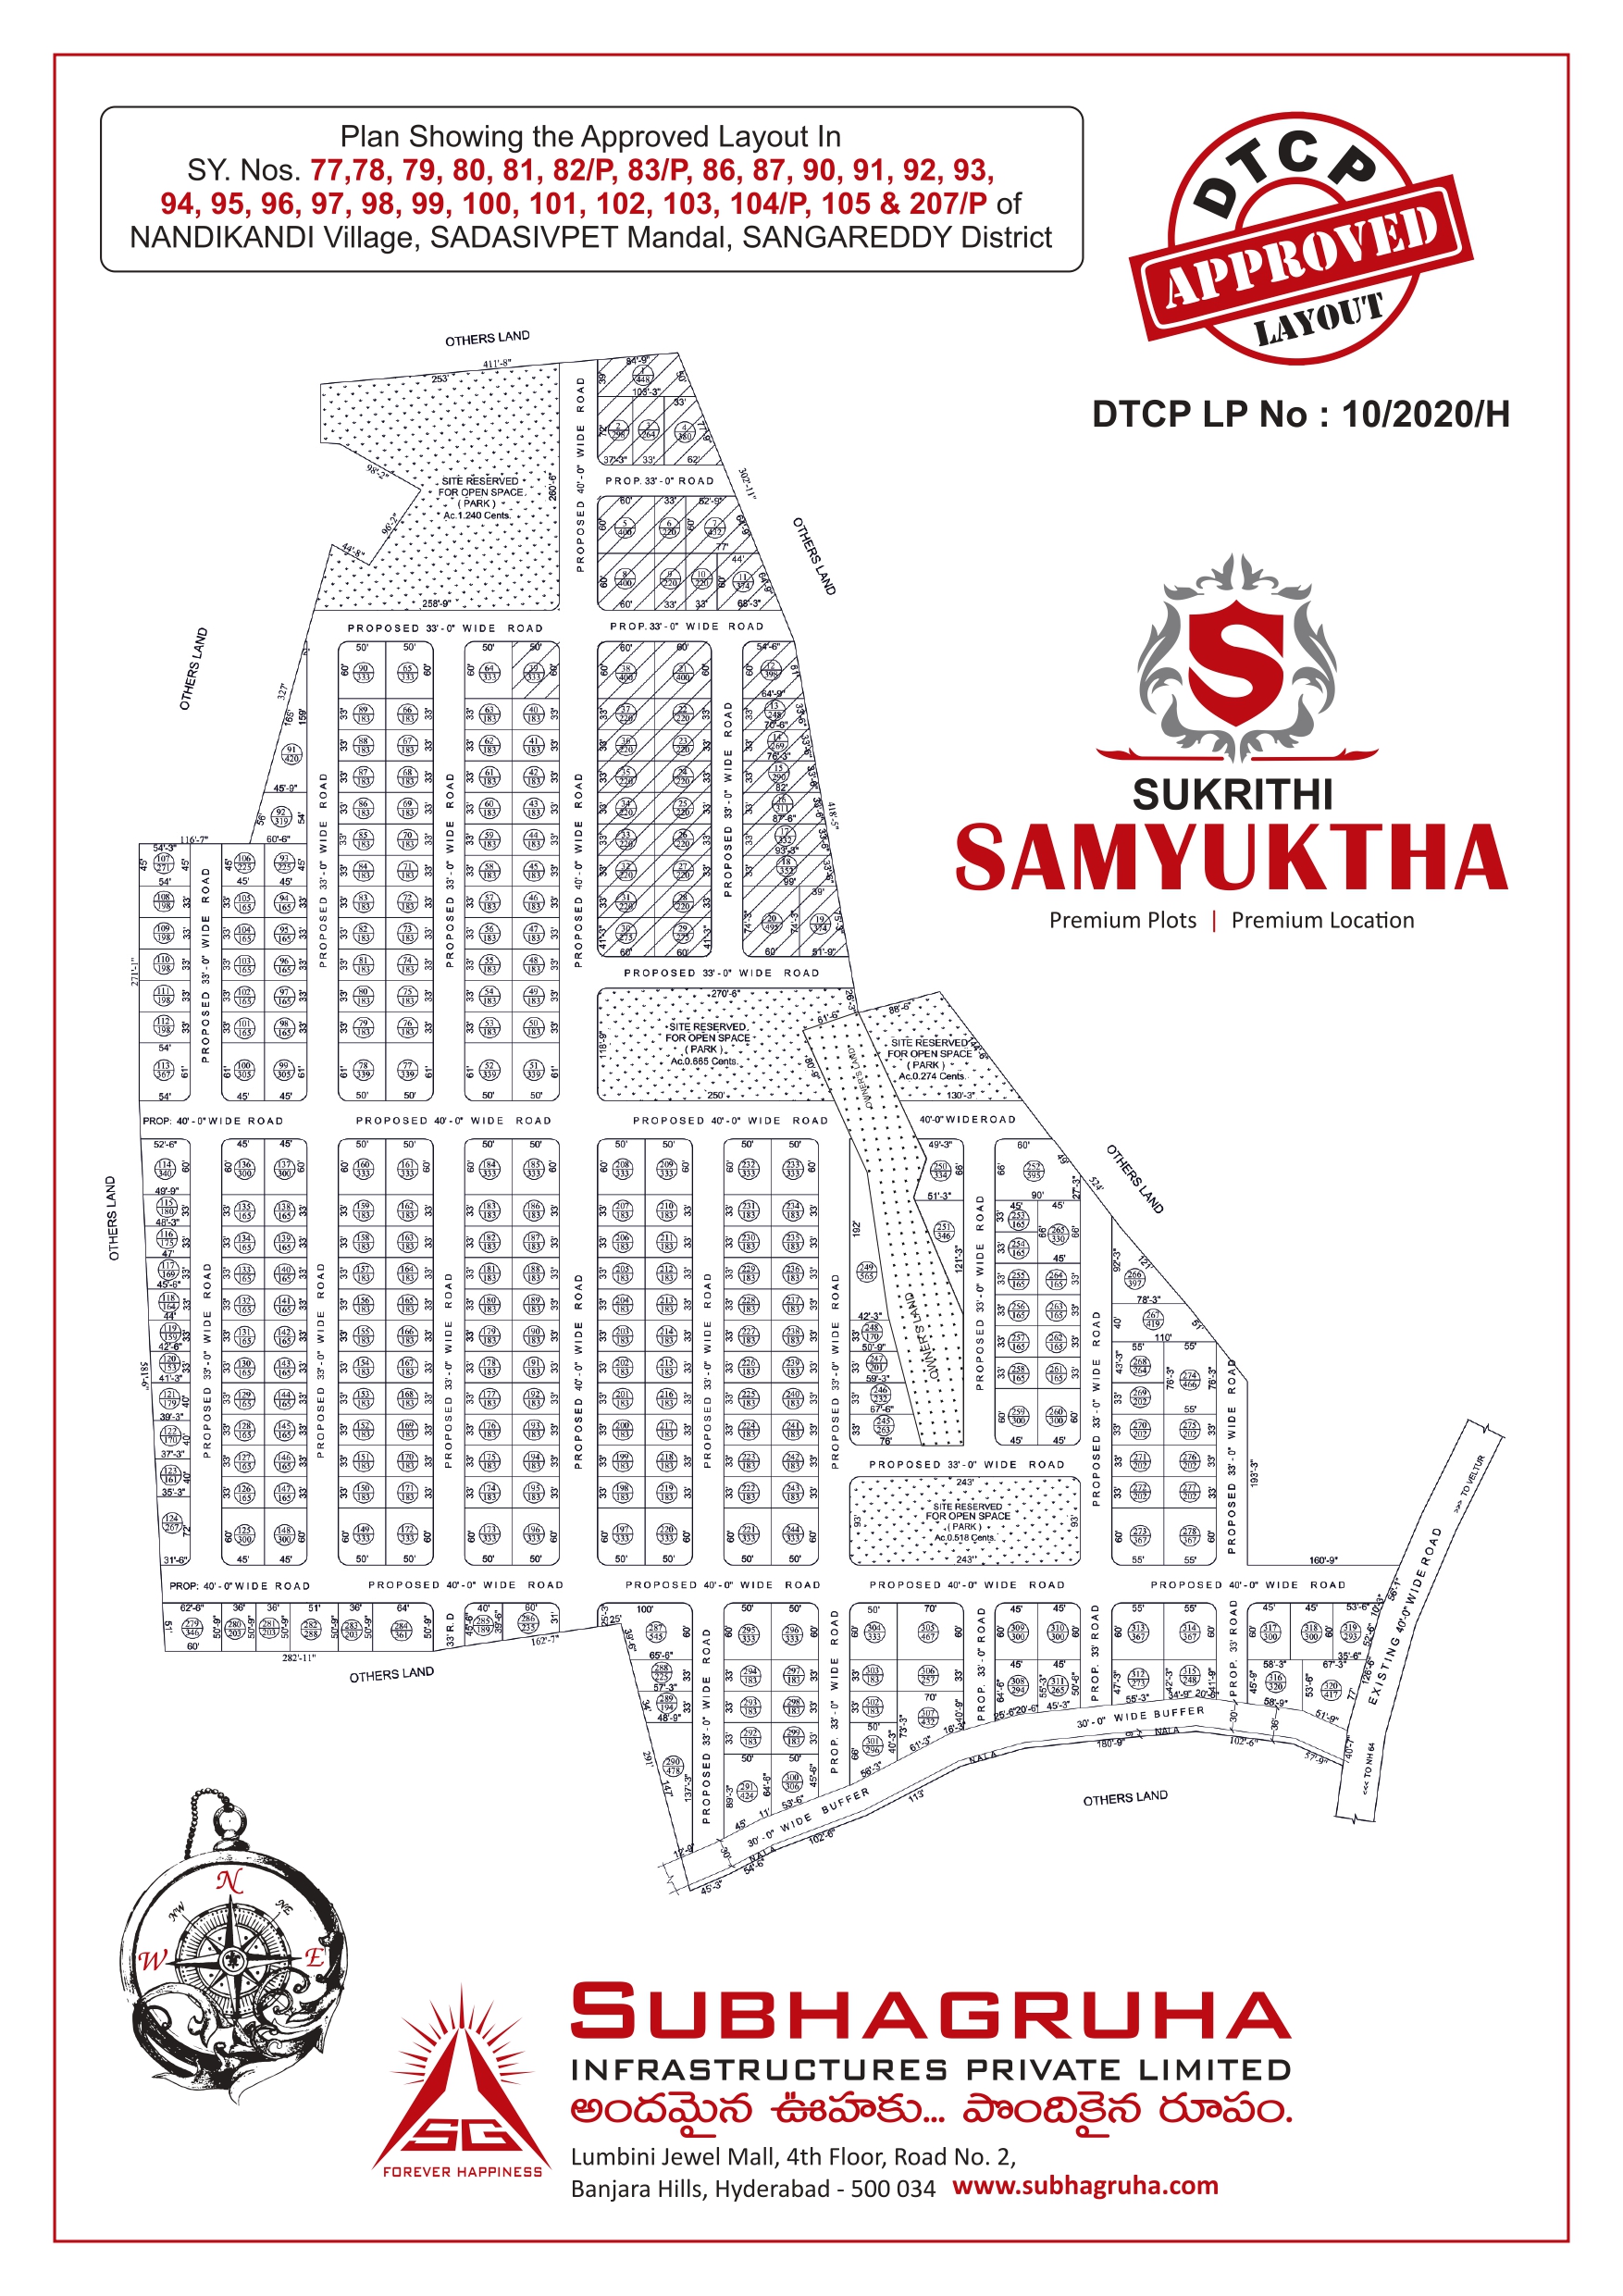 Sukrithi Samyuktha Phase 1